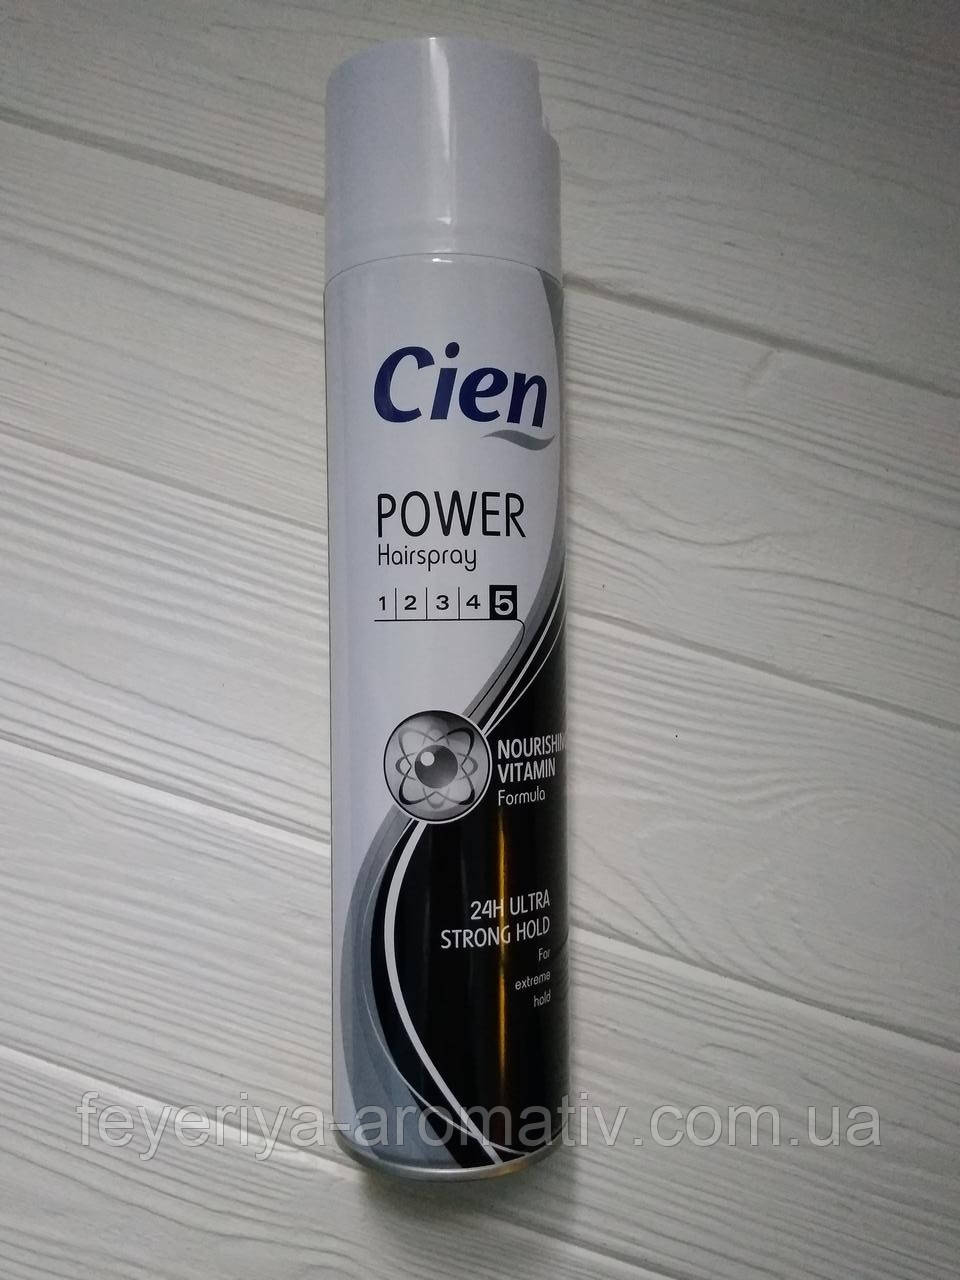 Лак для волос Сien Power Hairspray 5, 400мл (Германия)